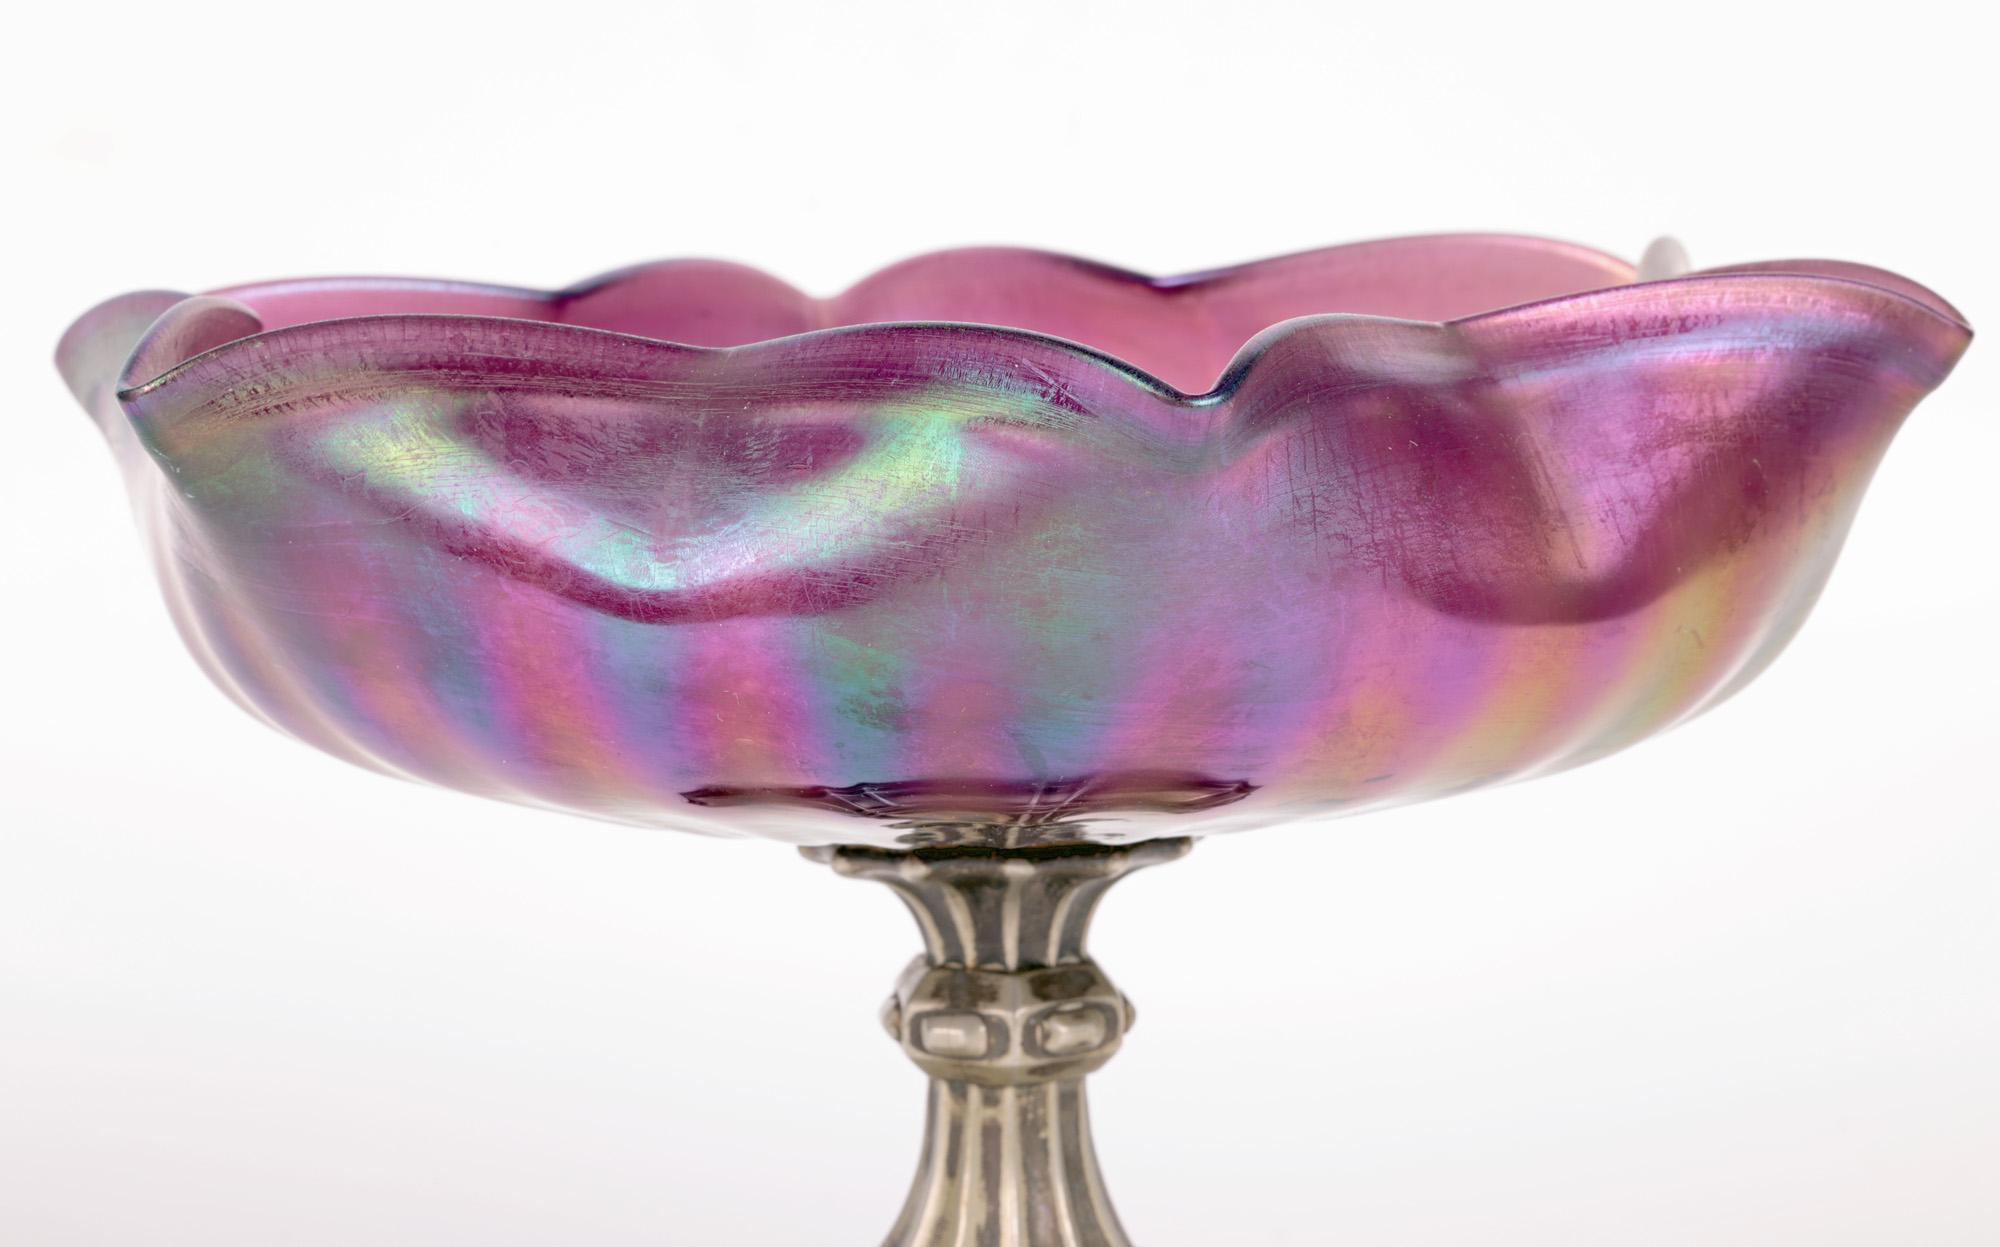 Eine stilvolle tschechisch-böhmische Jugendstil-Sockelschale aus irisierendem violettem Glas, die dem bekannten Hersteller Kralik zugeschrieben wird und aus der Zeit um 1904 stammt. Die Schale ist mundgeblasen und hat eine breite, runde Form mit